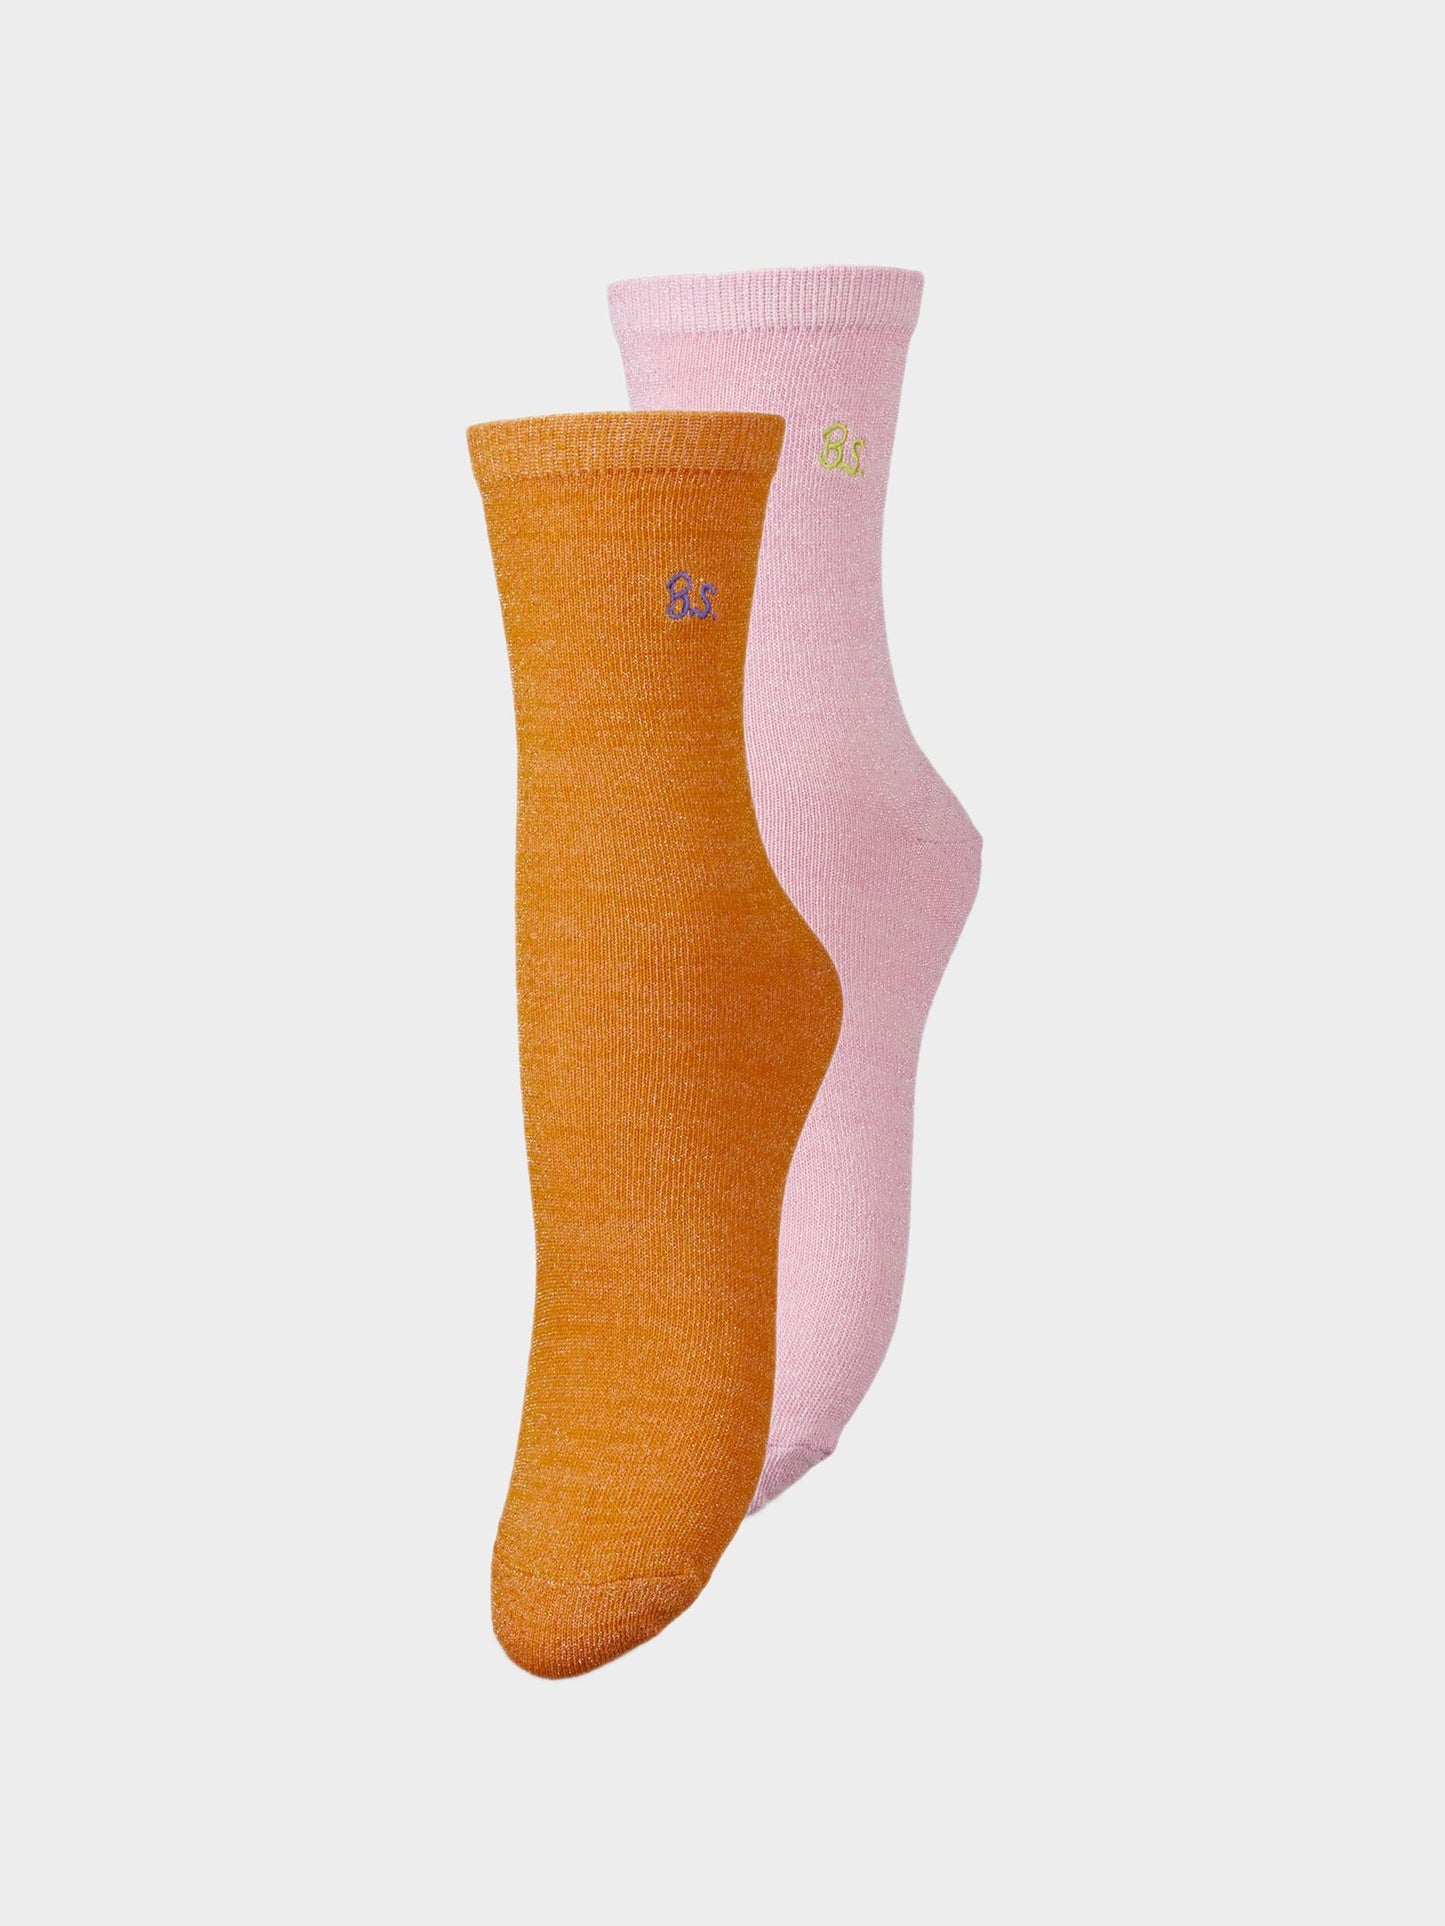 Becksöndergaard, Bessa Glam Sock 2 Pack - Orange/Blush, archive, archive, sale, sale